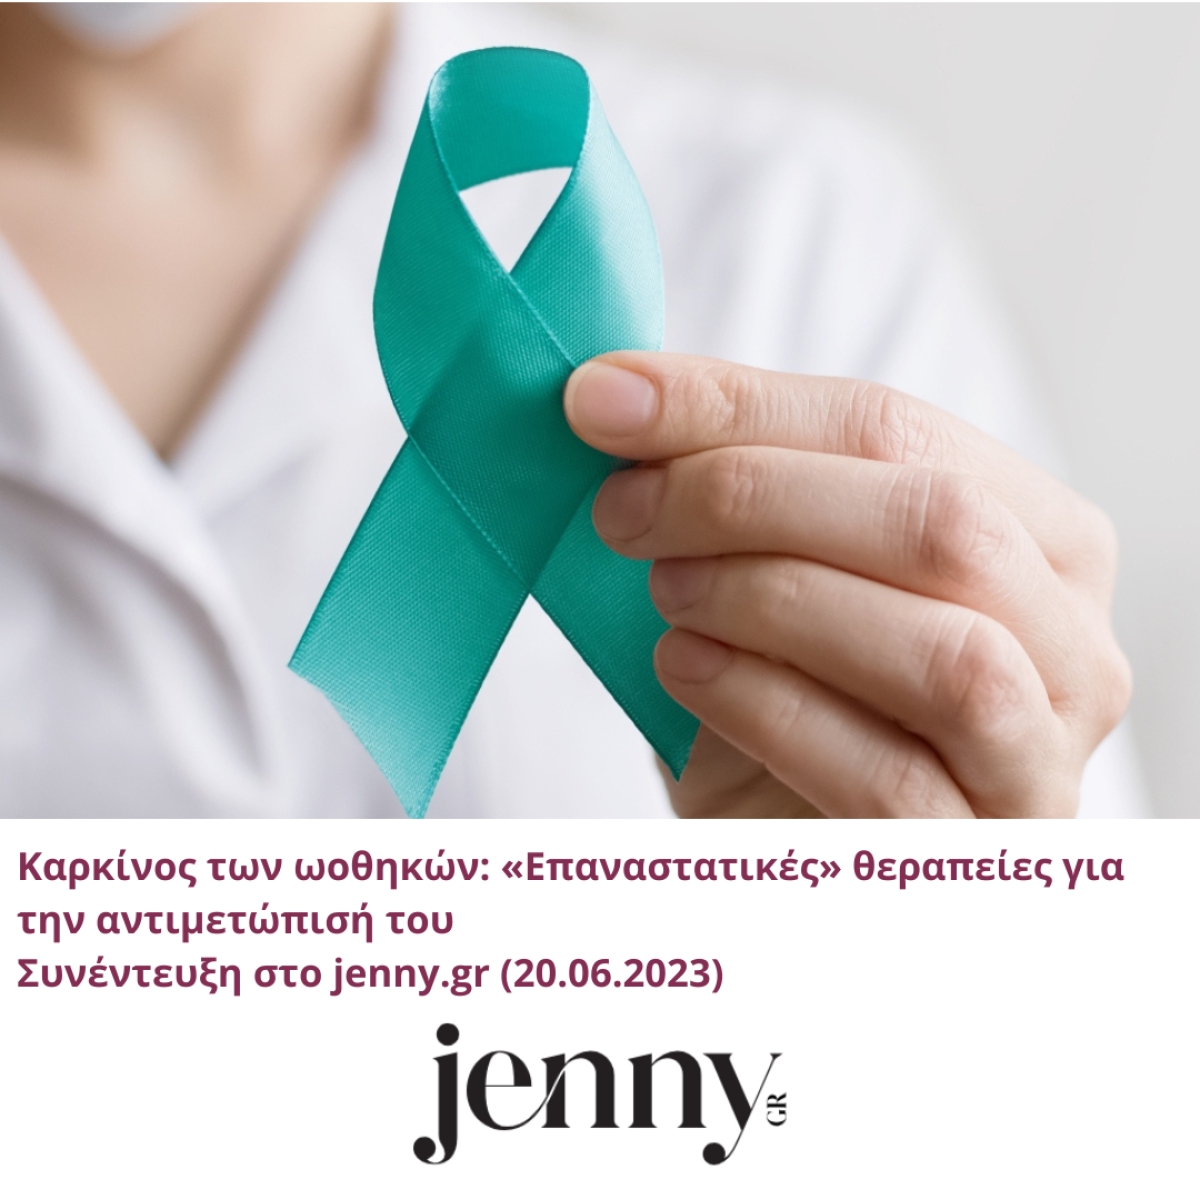 Καρκίνος των ωοθηκών: «Επαναστατικές» θεραπείες για την αντιμετώπισή του | jenny.gr | 20.06.2023